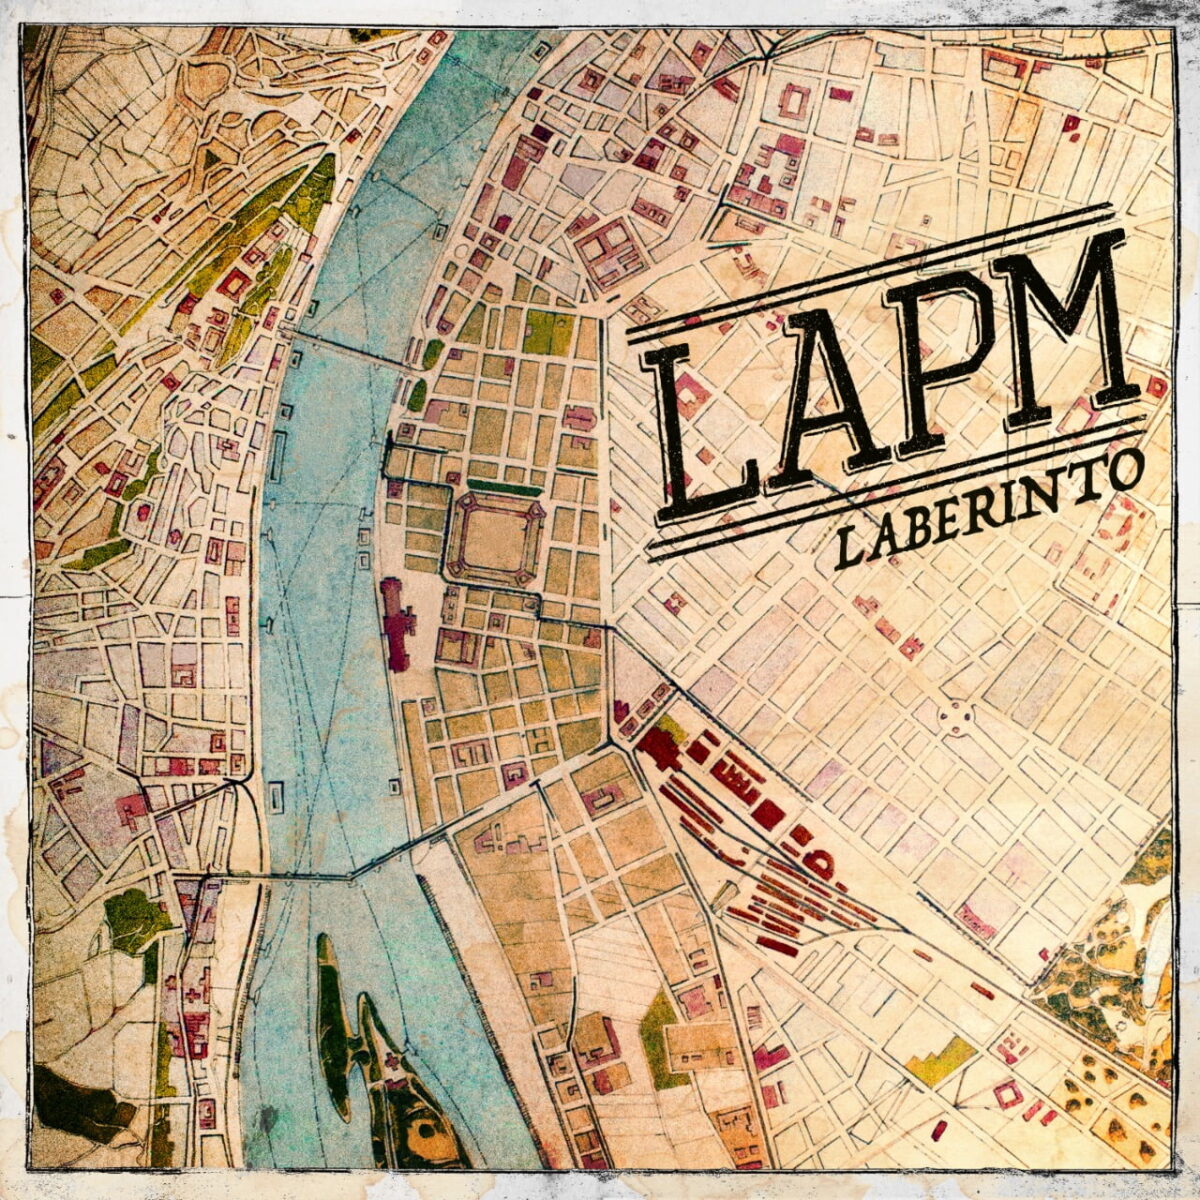 la banda colombiana lapm presenta su nuevo disco laberinto lapm 3